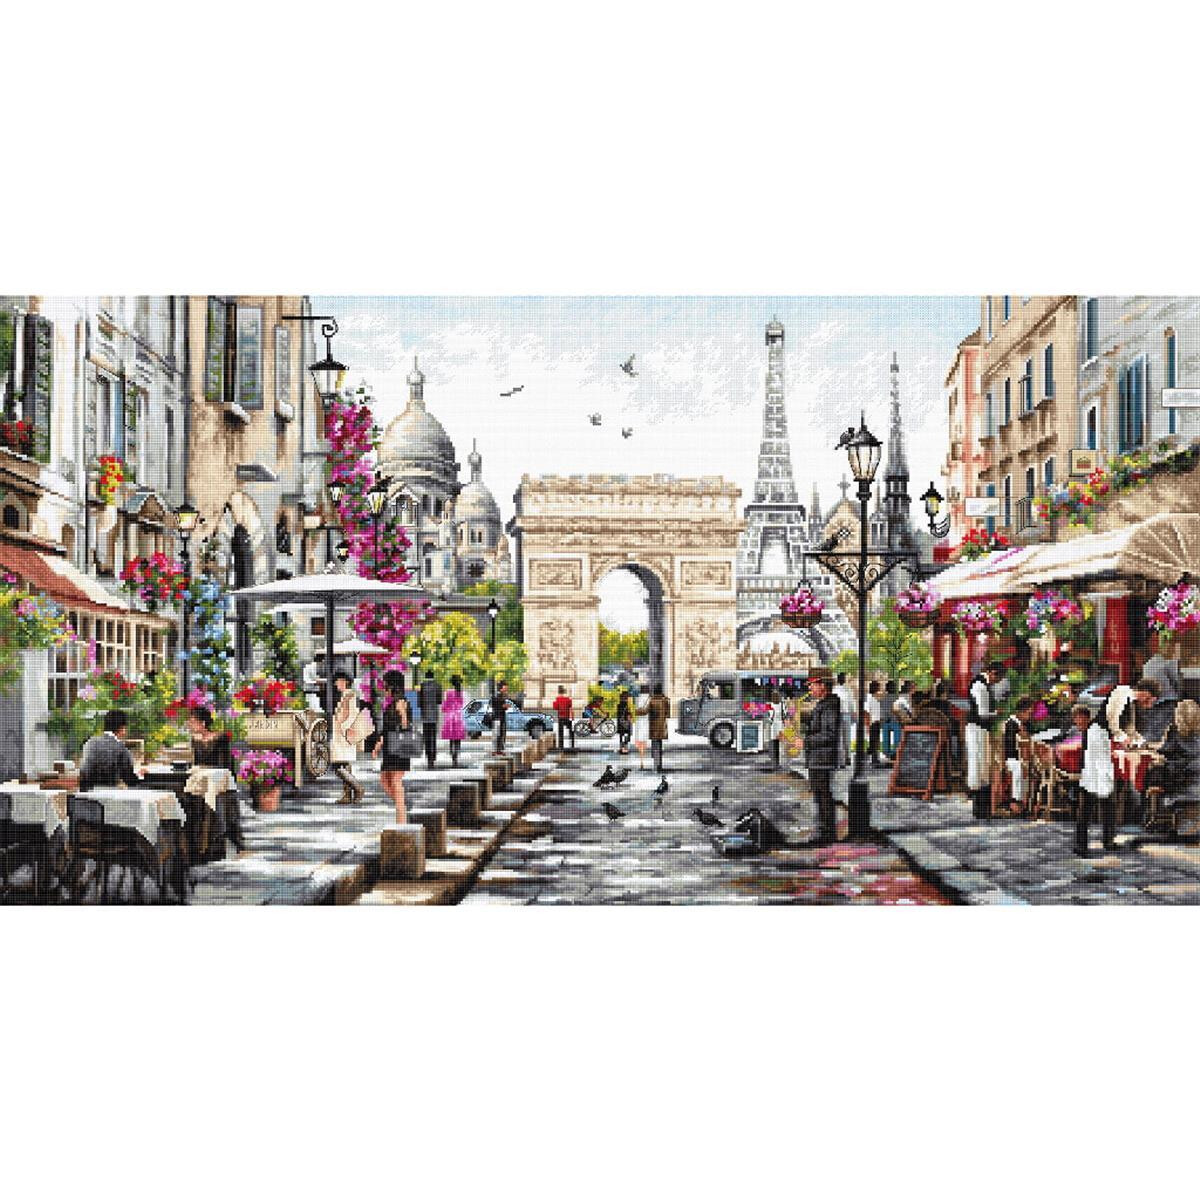 Una vivace scena di strada parigina con lArco di Trionfo...